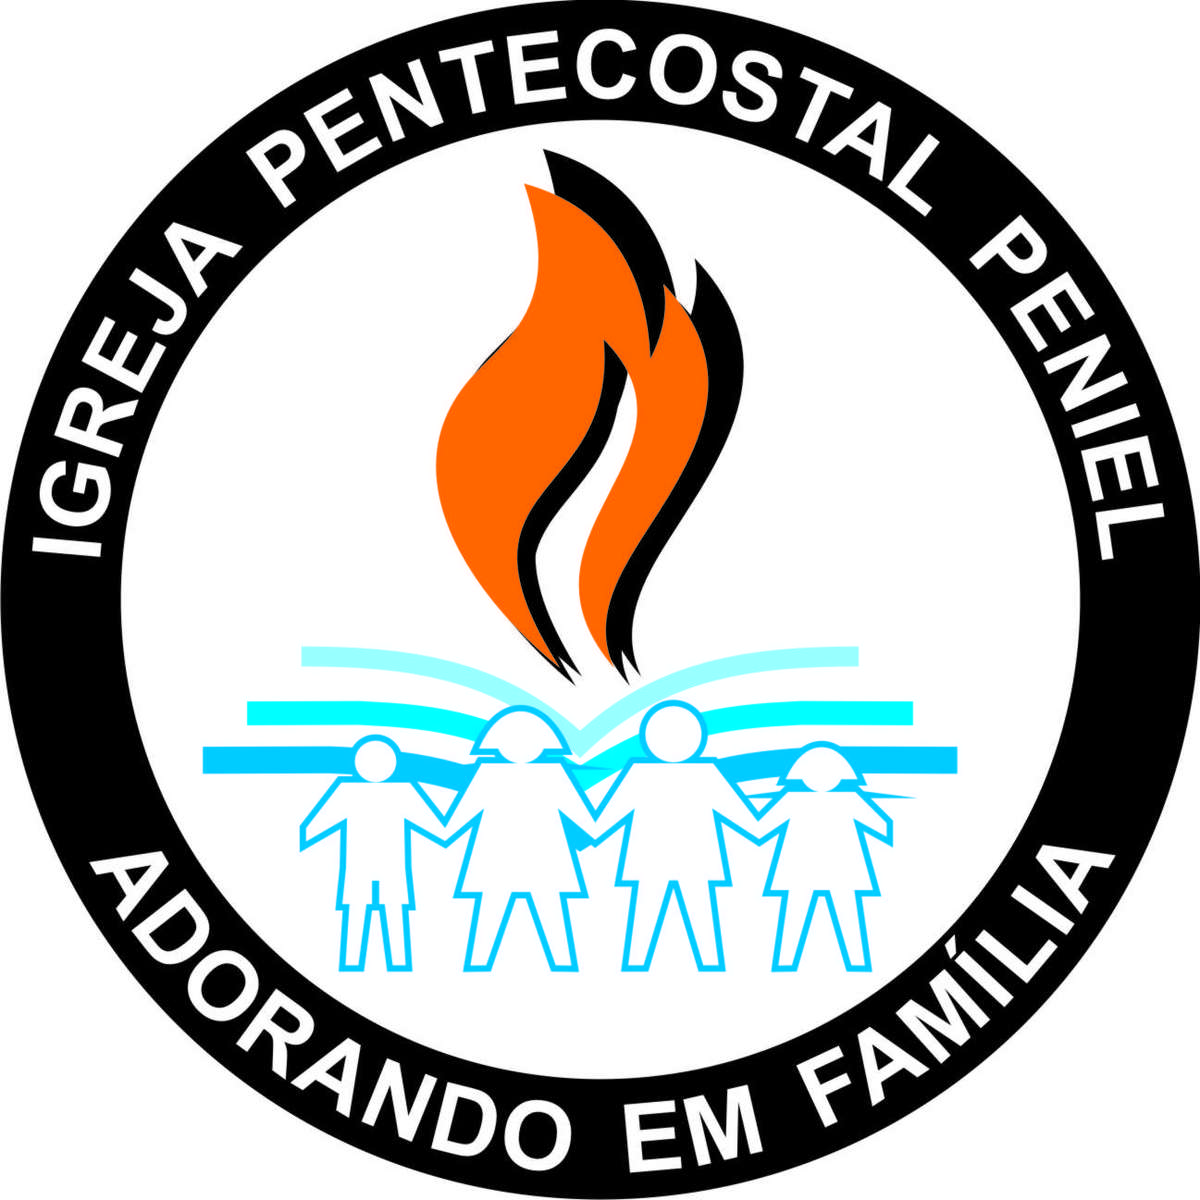 http://img.comunidades.net/pen/pentecostalpeniel/i.g.e._peniel_jpg.jpg